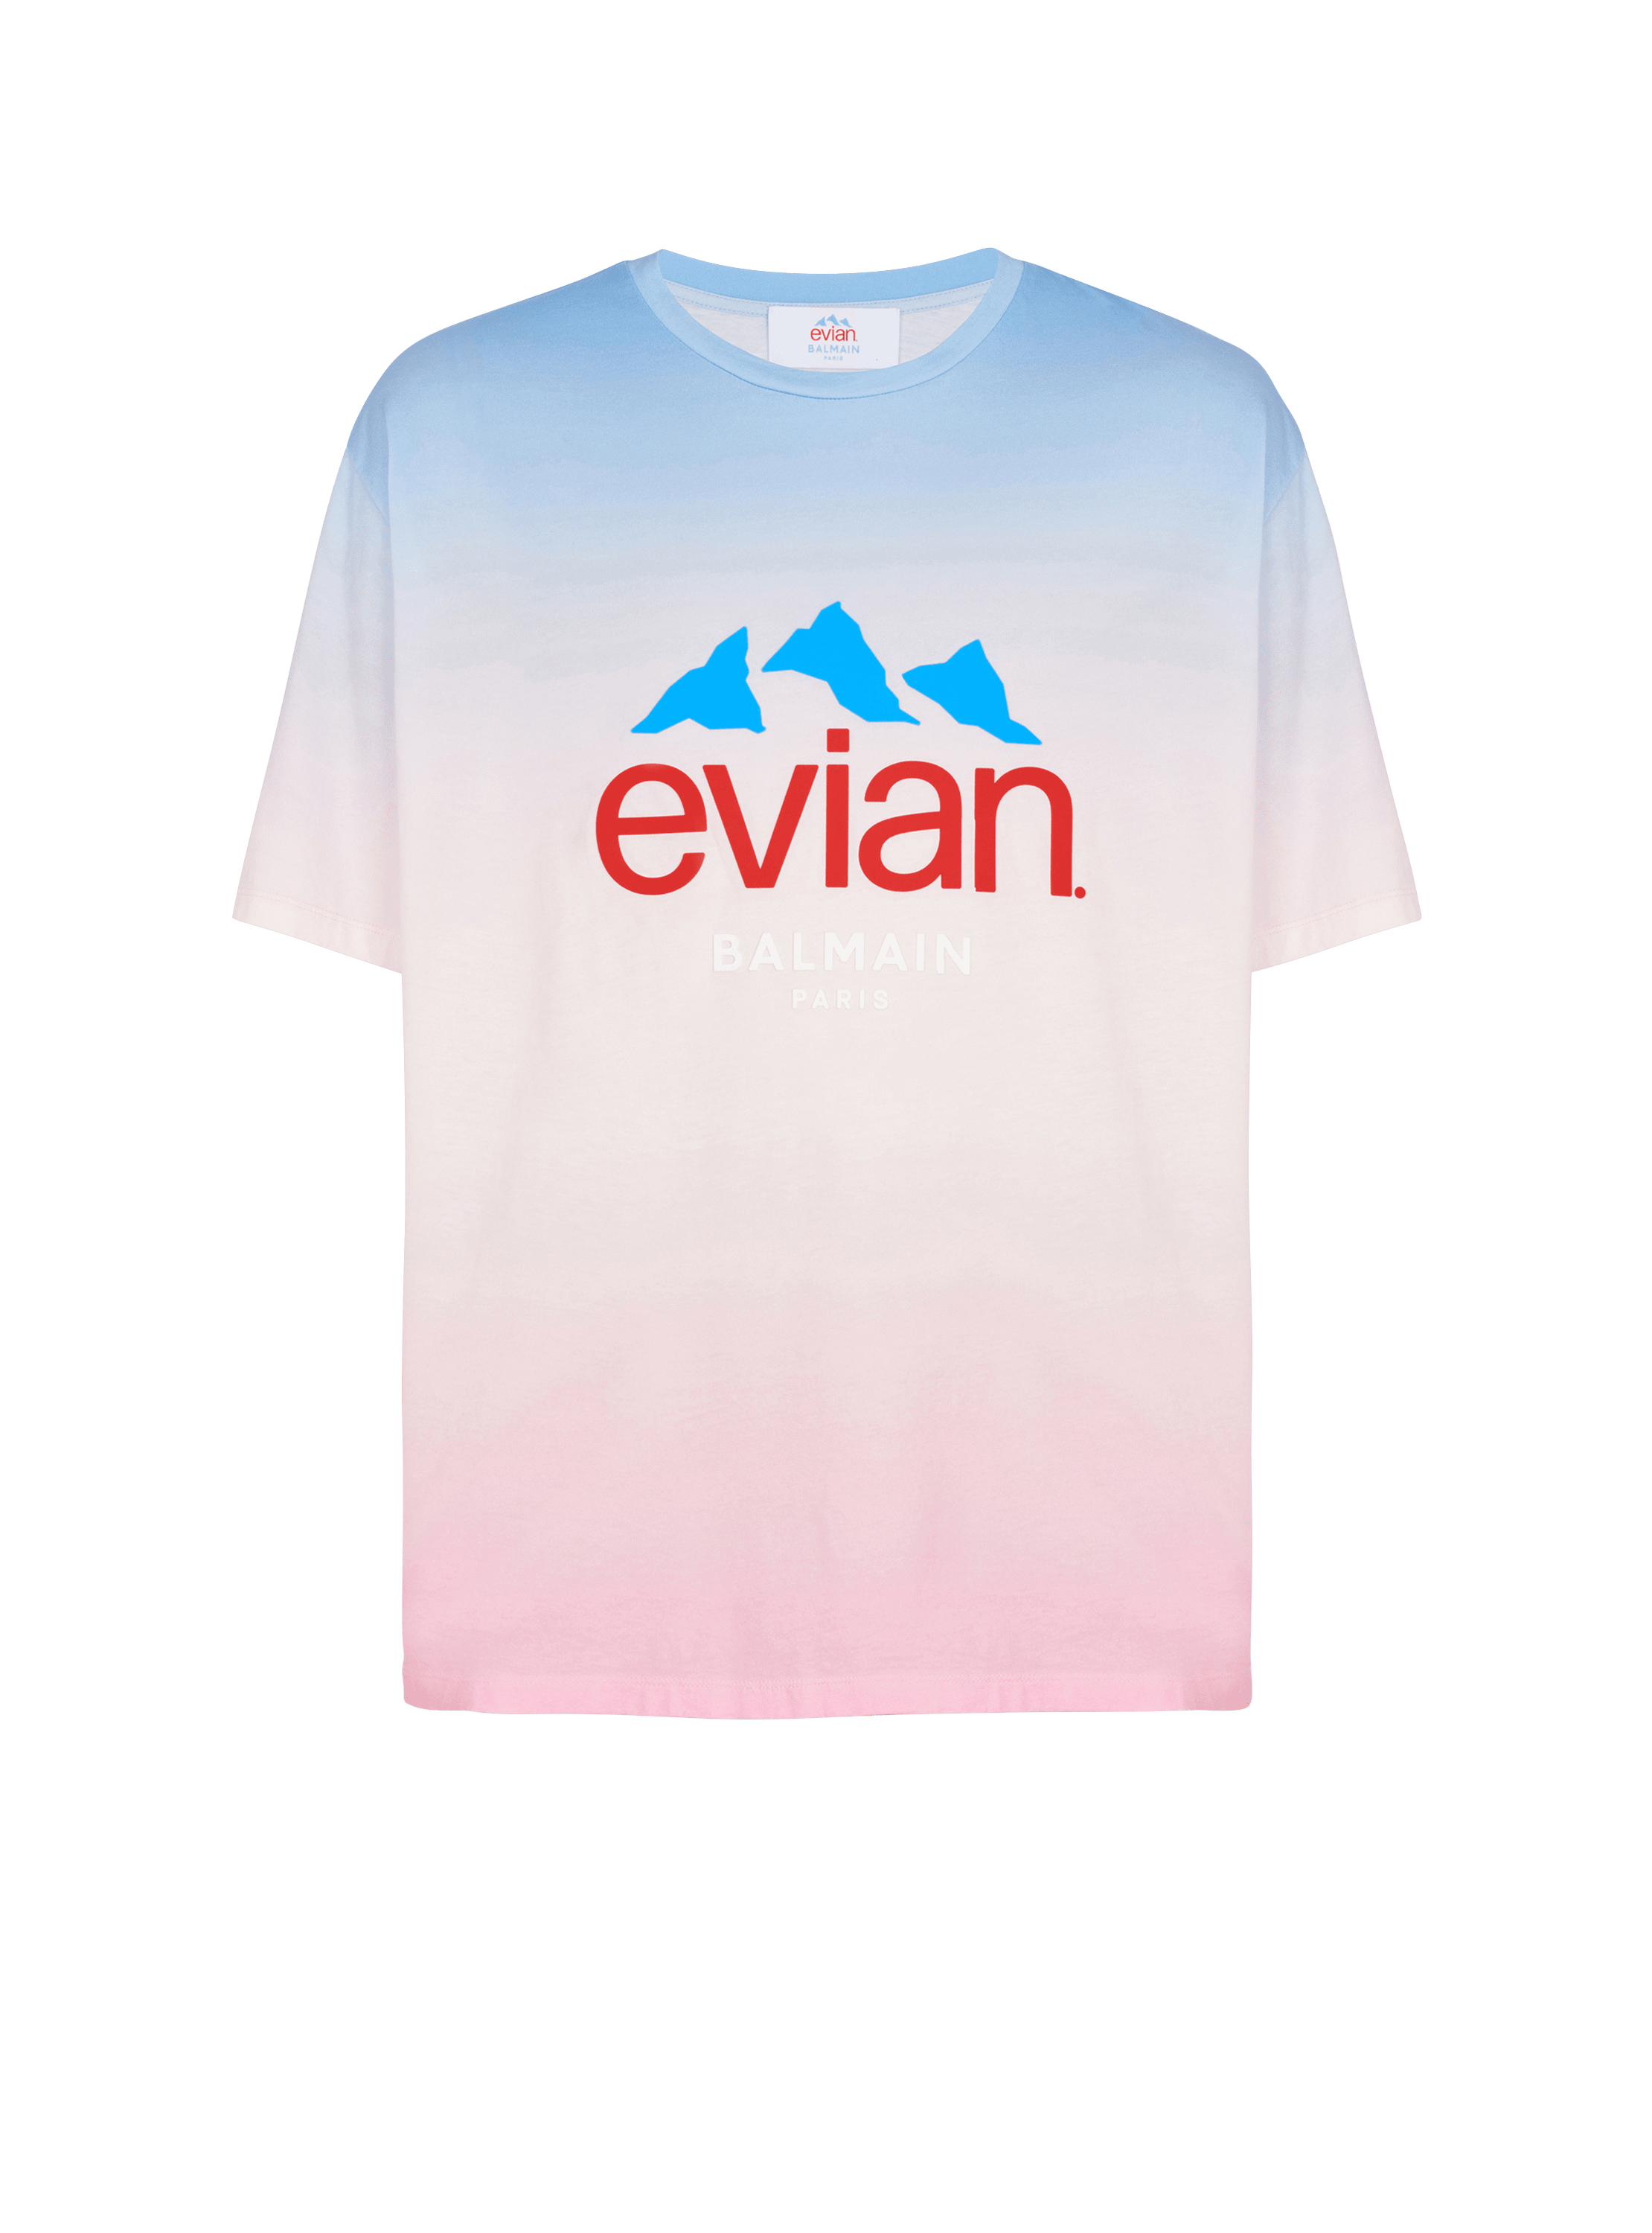 Balmain x Evian - T-shirt dégradé 